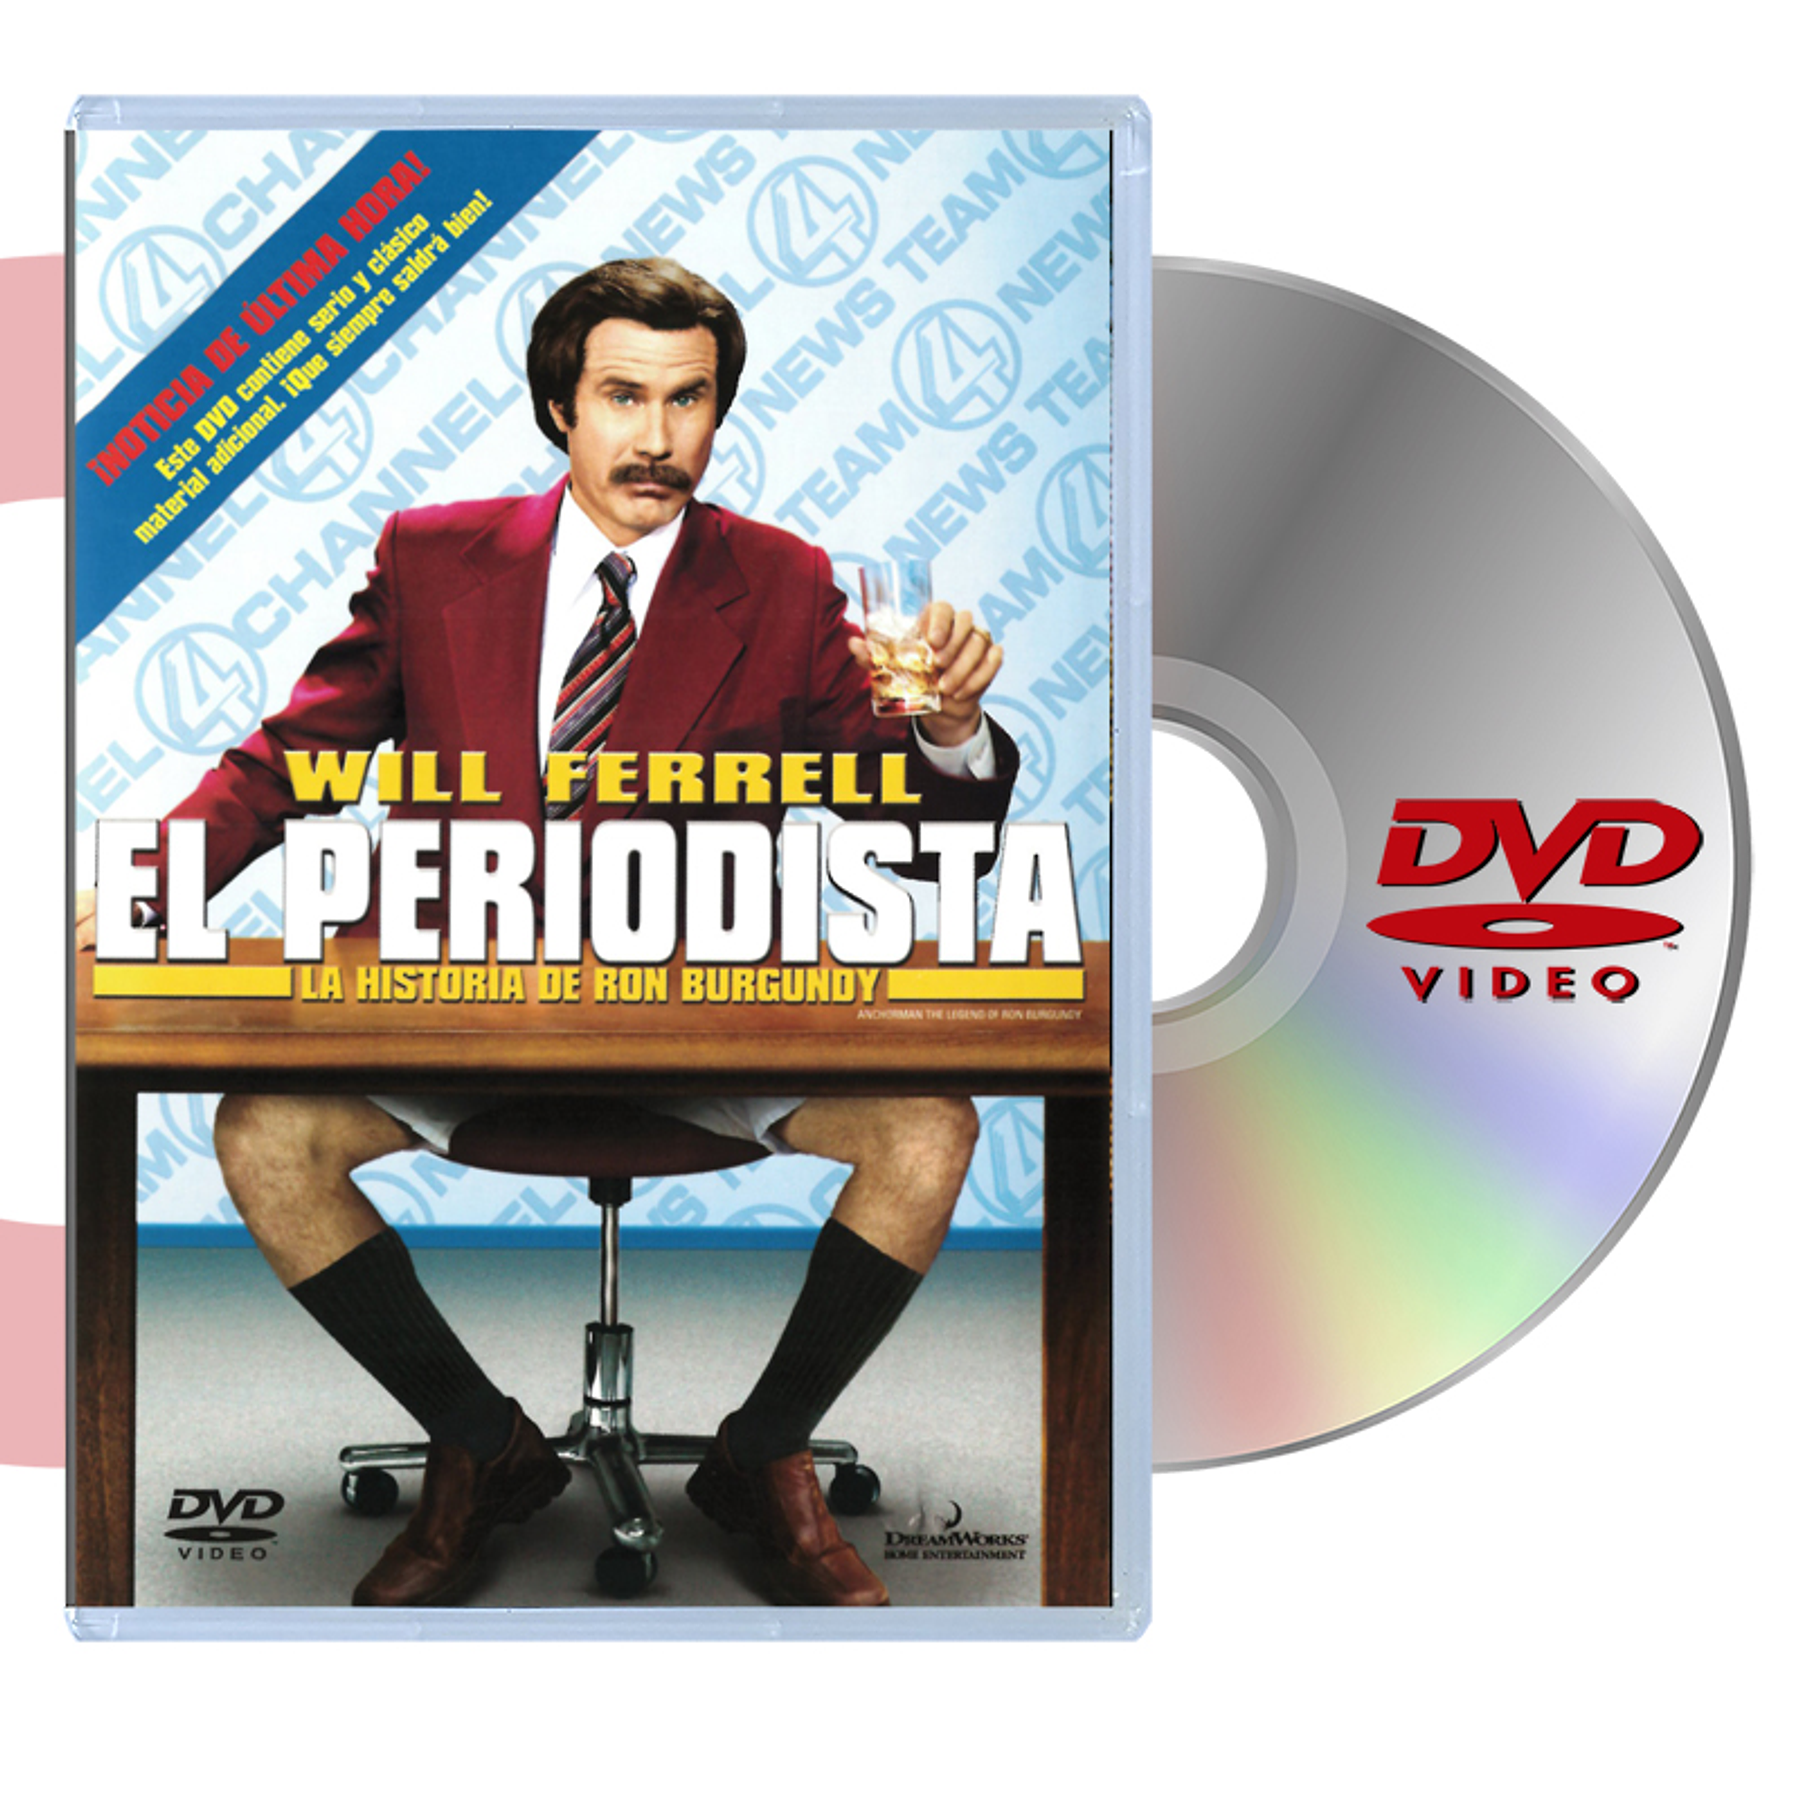 DVD EL PERIODISTA: LA HISTORIA DE RON BURGUNDY